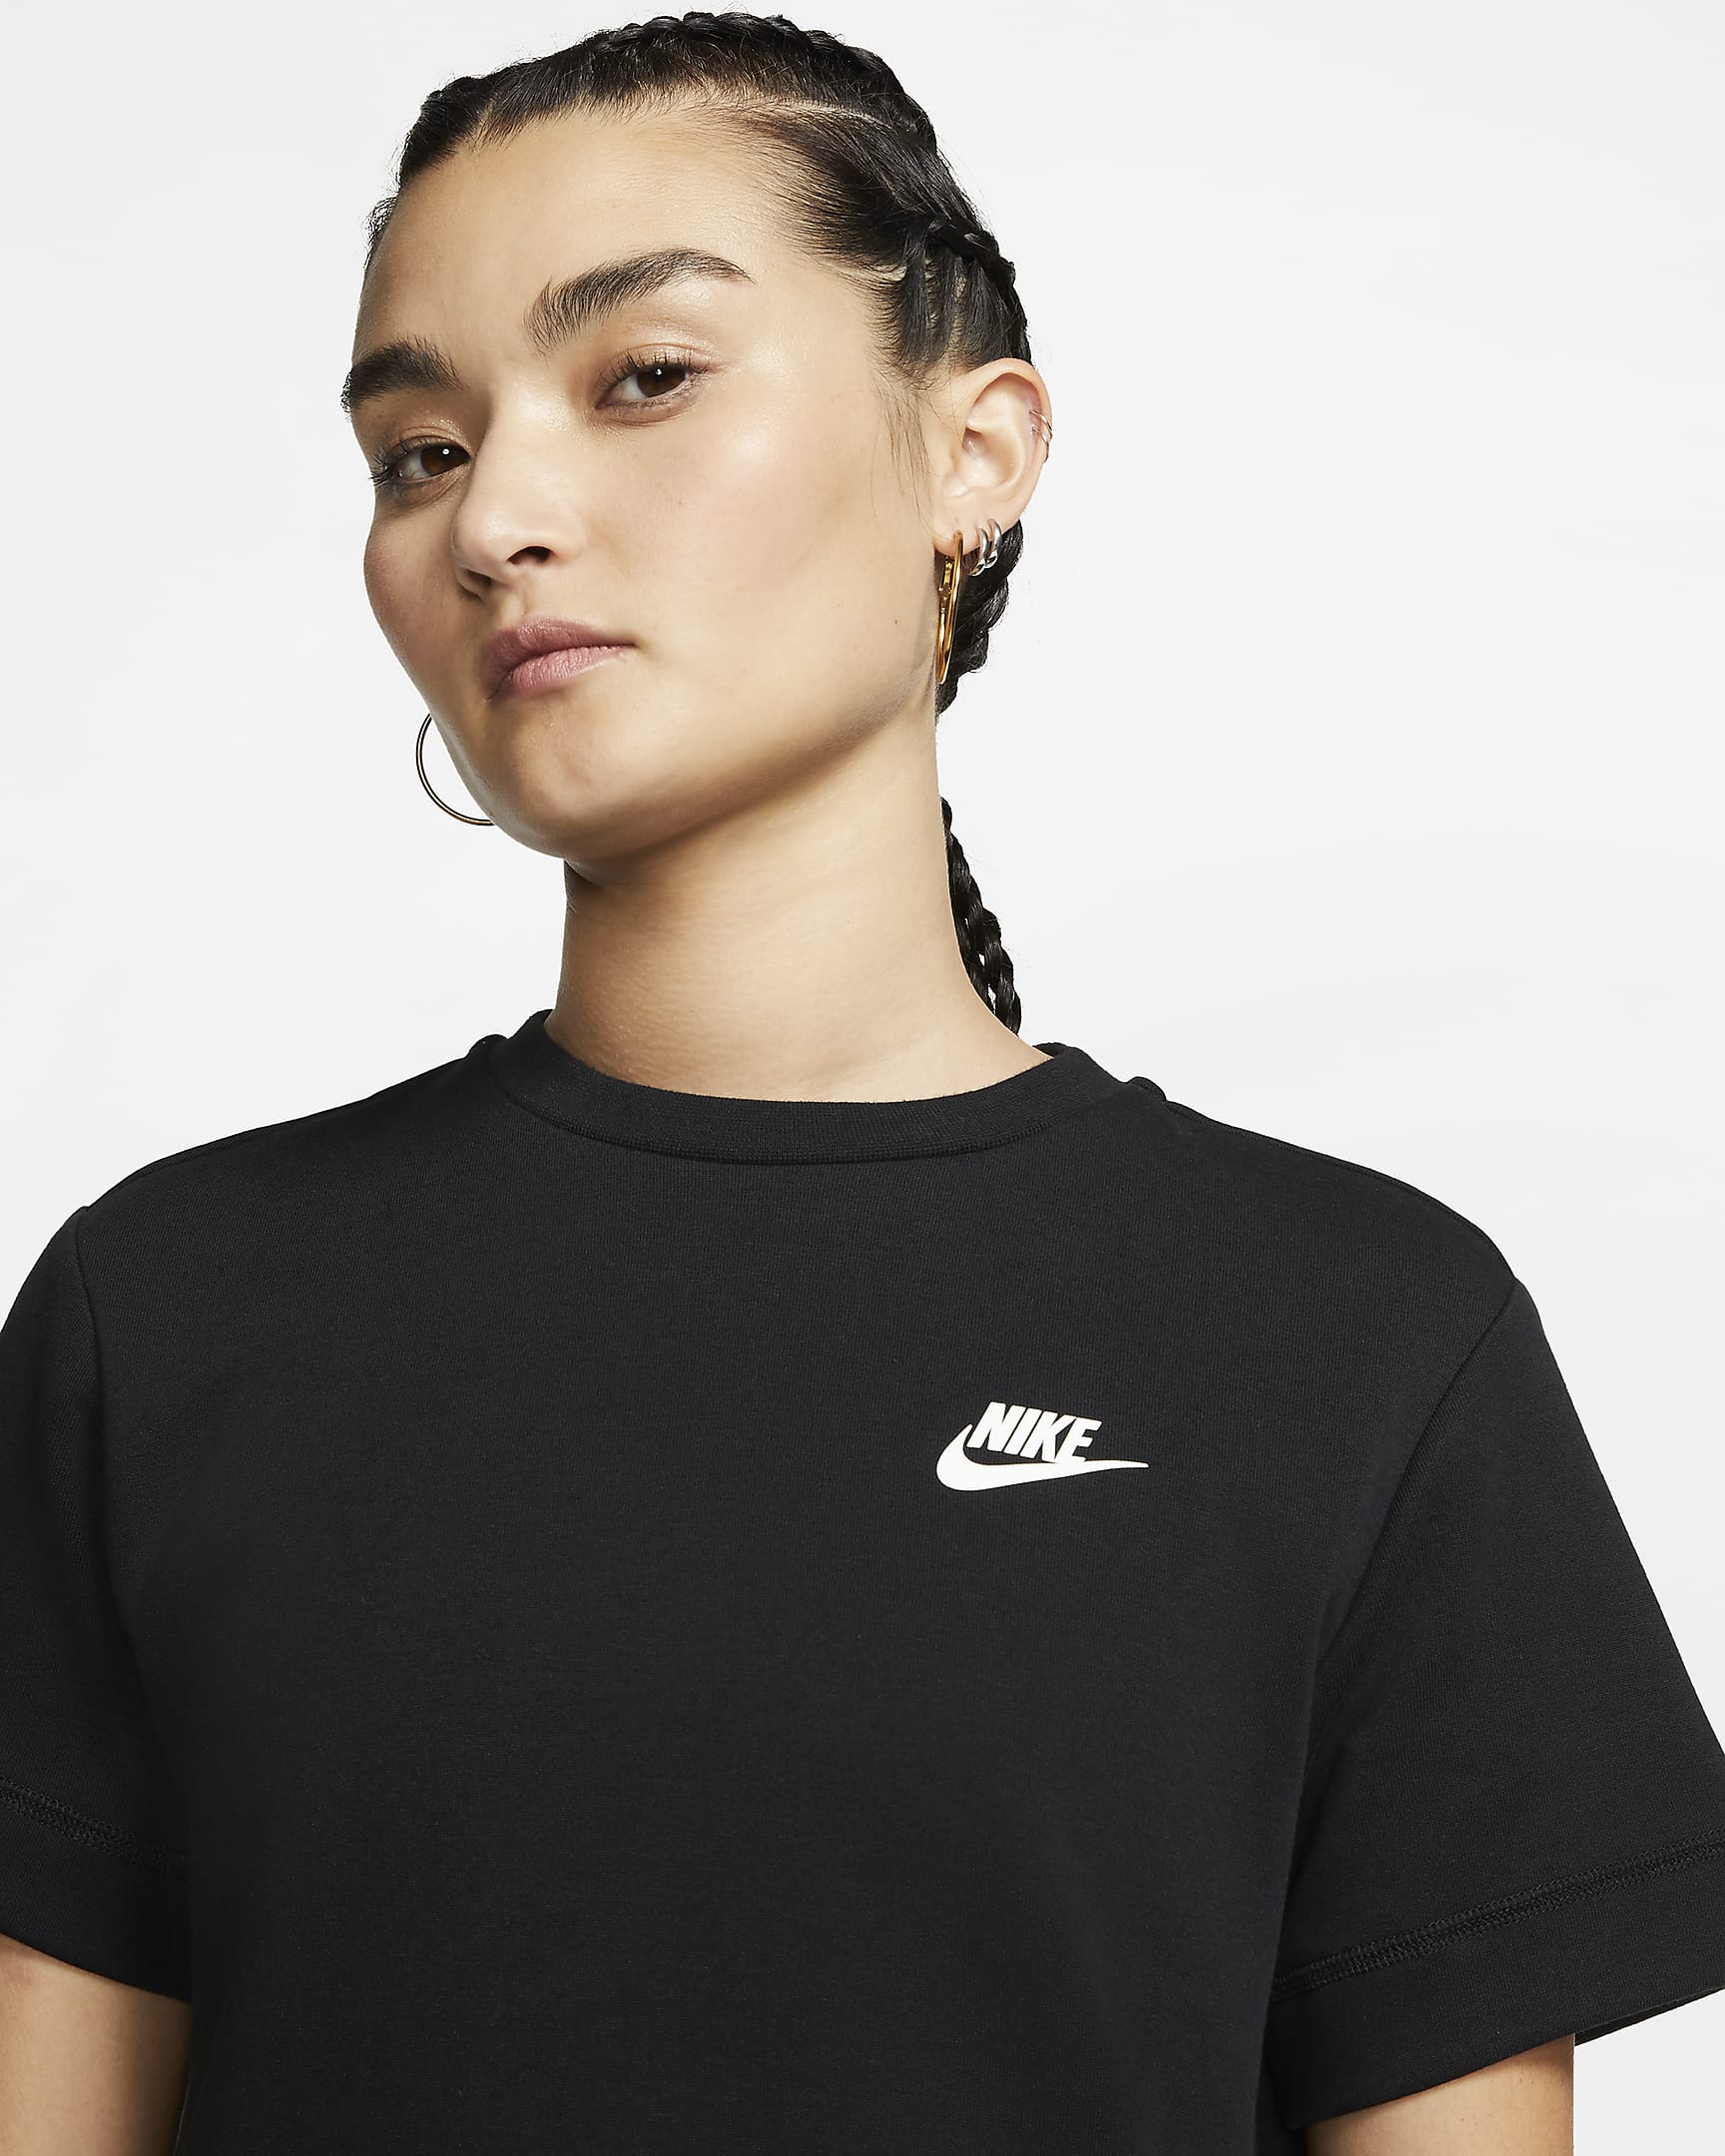 Nike Sportswear Tech Fleece Women's Dress. Nike IN